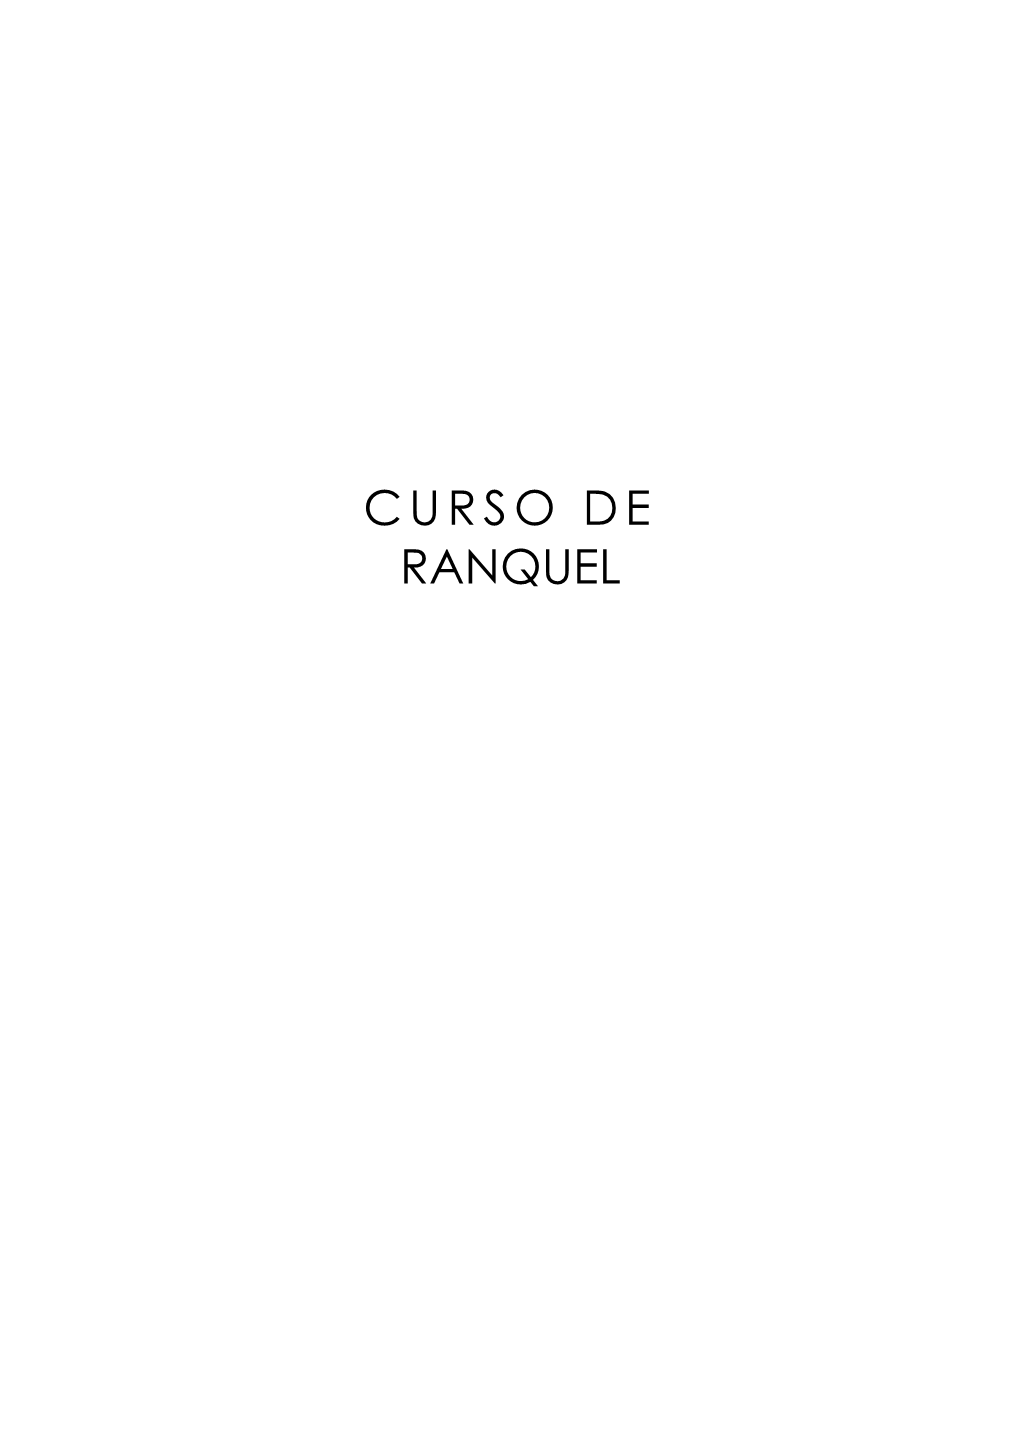 Curso De Ranquel / Daniel Cabral ; Nazareno Serraino ; Antonio Díaz-Fernández